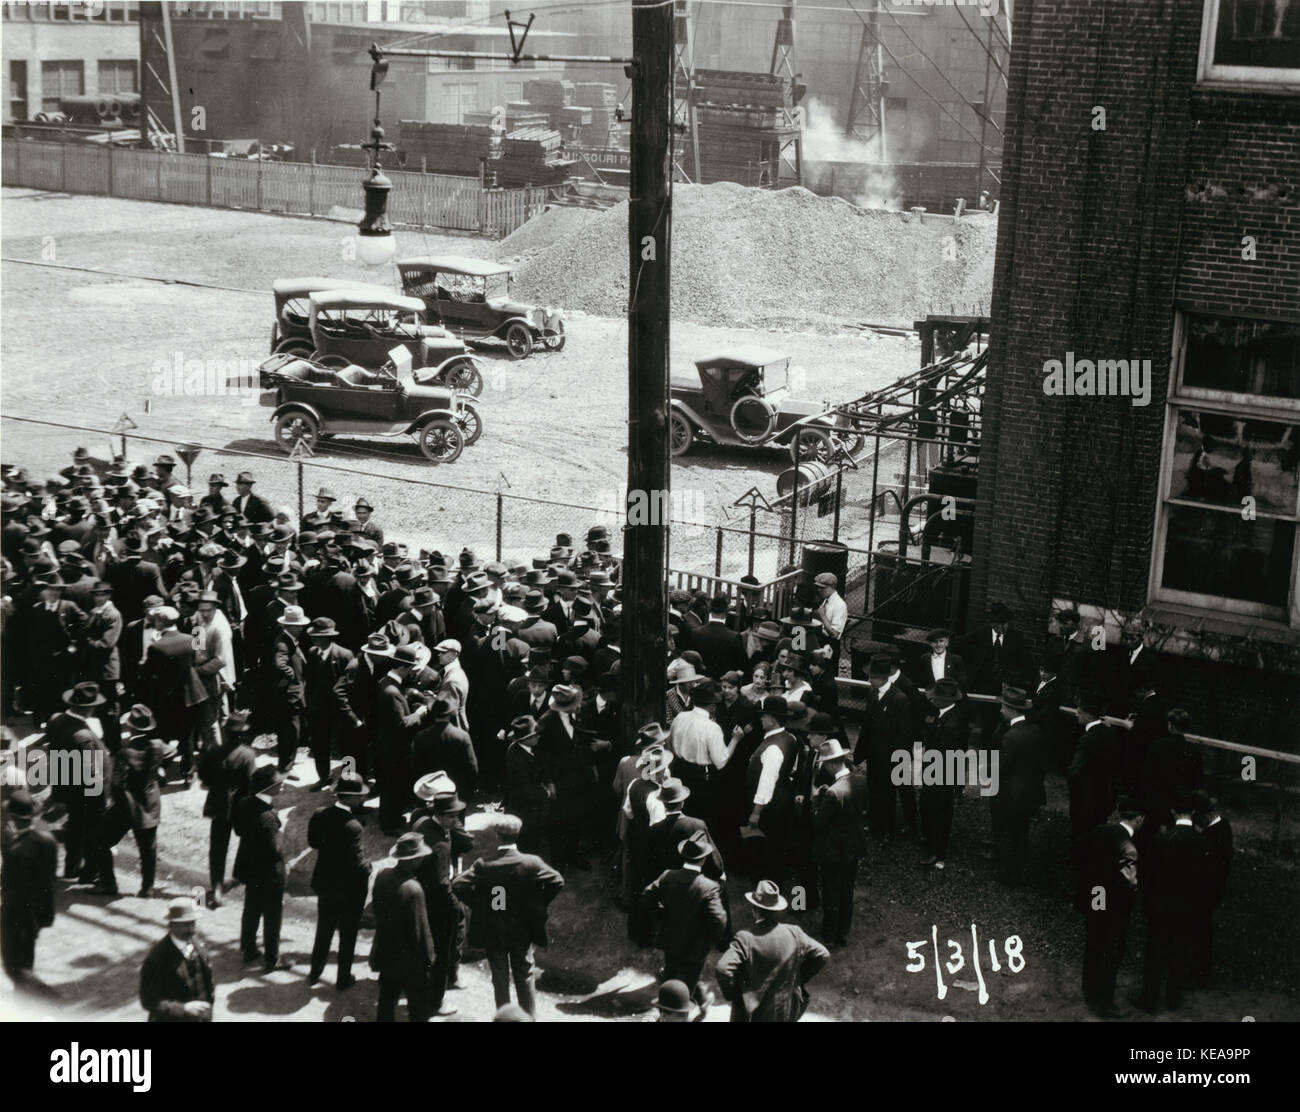 Wagner Electric Company sciopero, numerose persone si sono radunate fuori dall'edificio, alcuni in conflittuale pone come essi converse gli uni con gli altri. Il 3 maggio 1918 Foto Stock